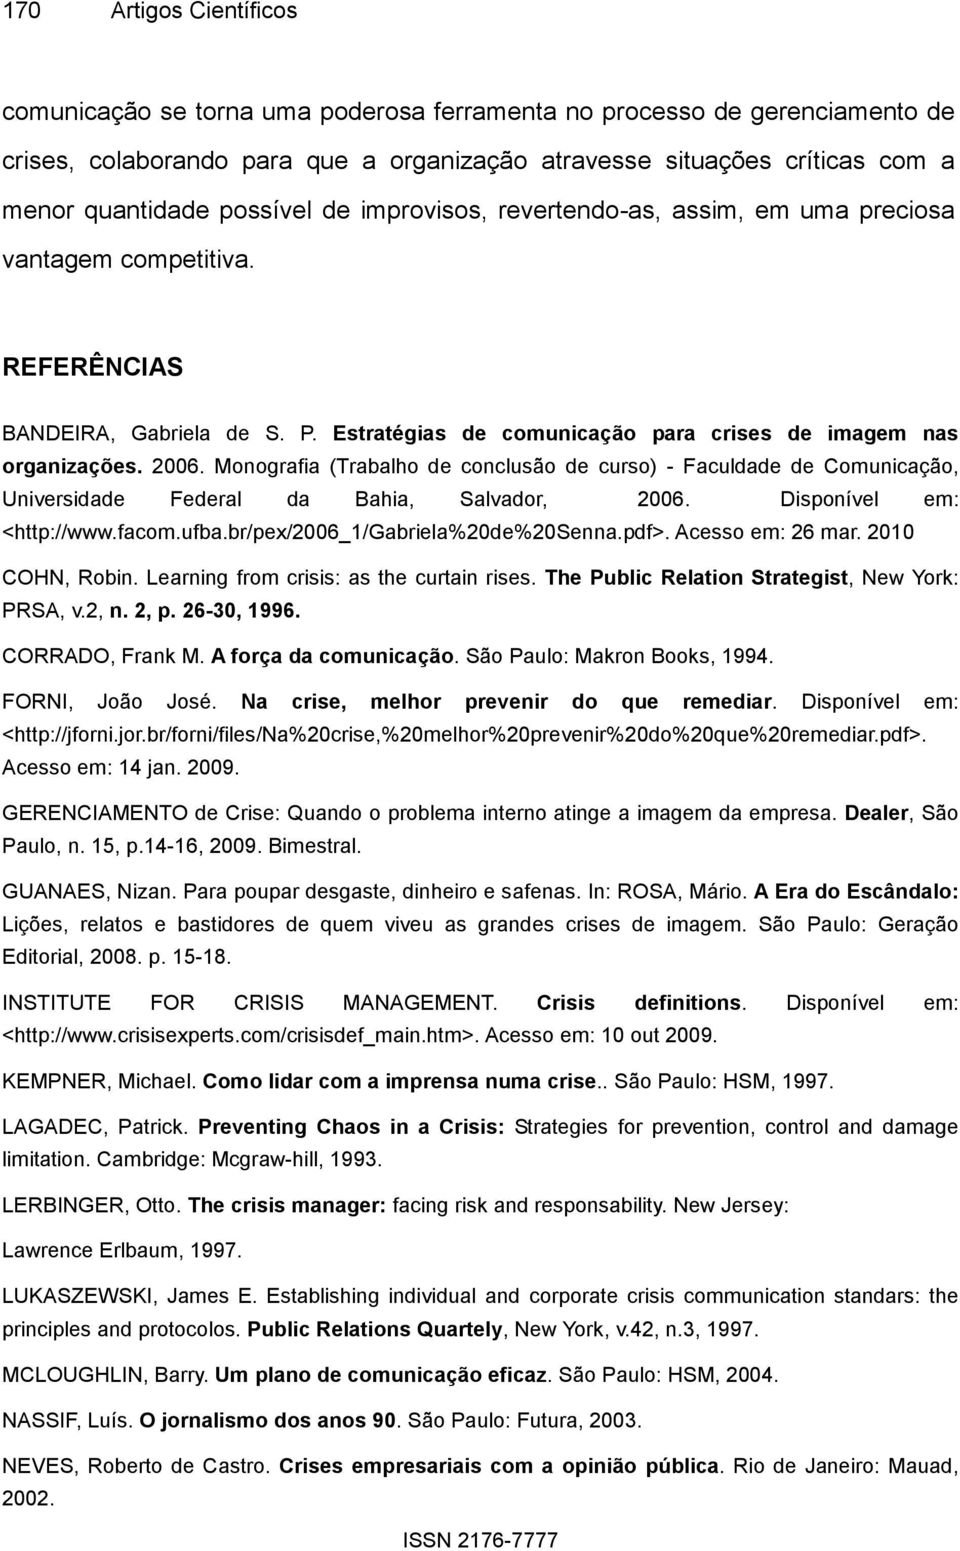 Monografia (Trabalho de conclusão de curso) - Faculdade de Comunicação, Universidade Federal da Bahia, Salvador, 2006. Disponível em: <http://www.facom.ufba.br/pex/2006_1/gabriela%20de%20senna.pdf>.